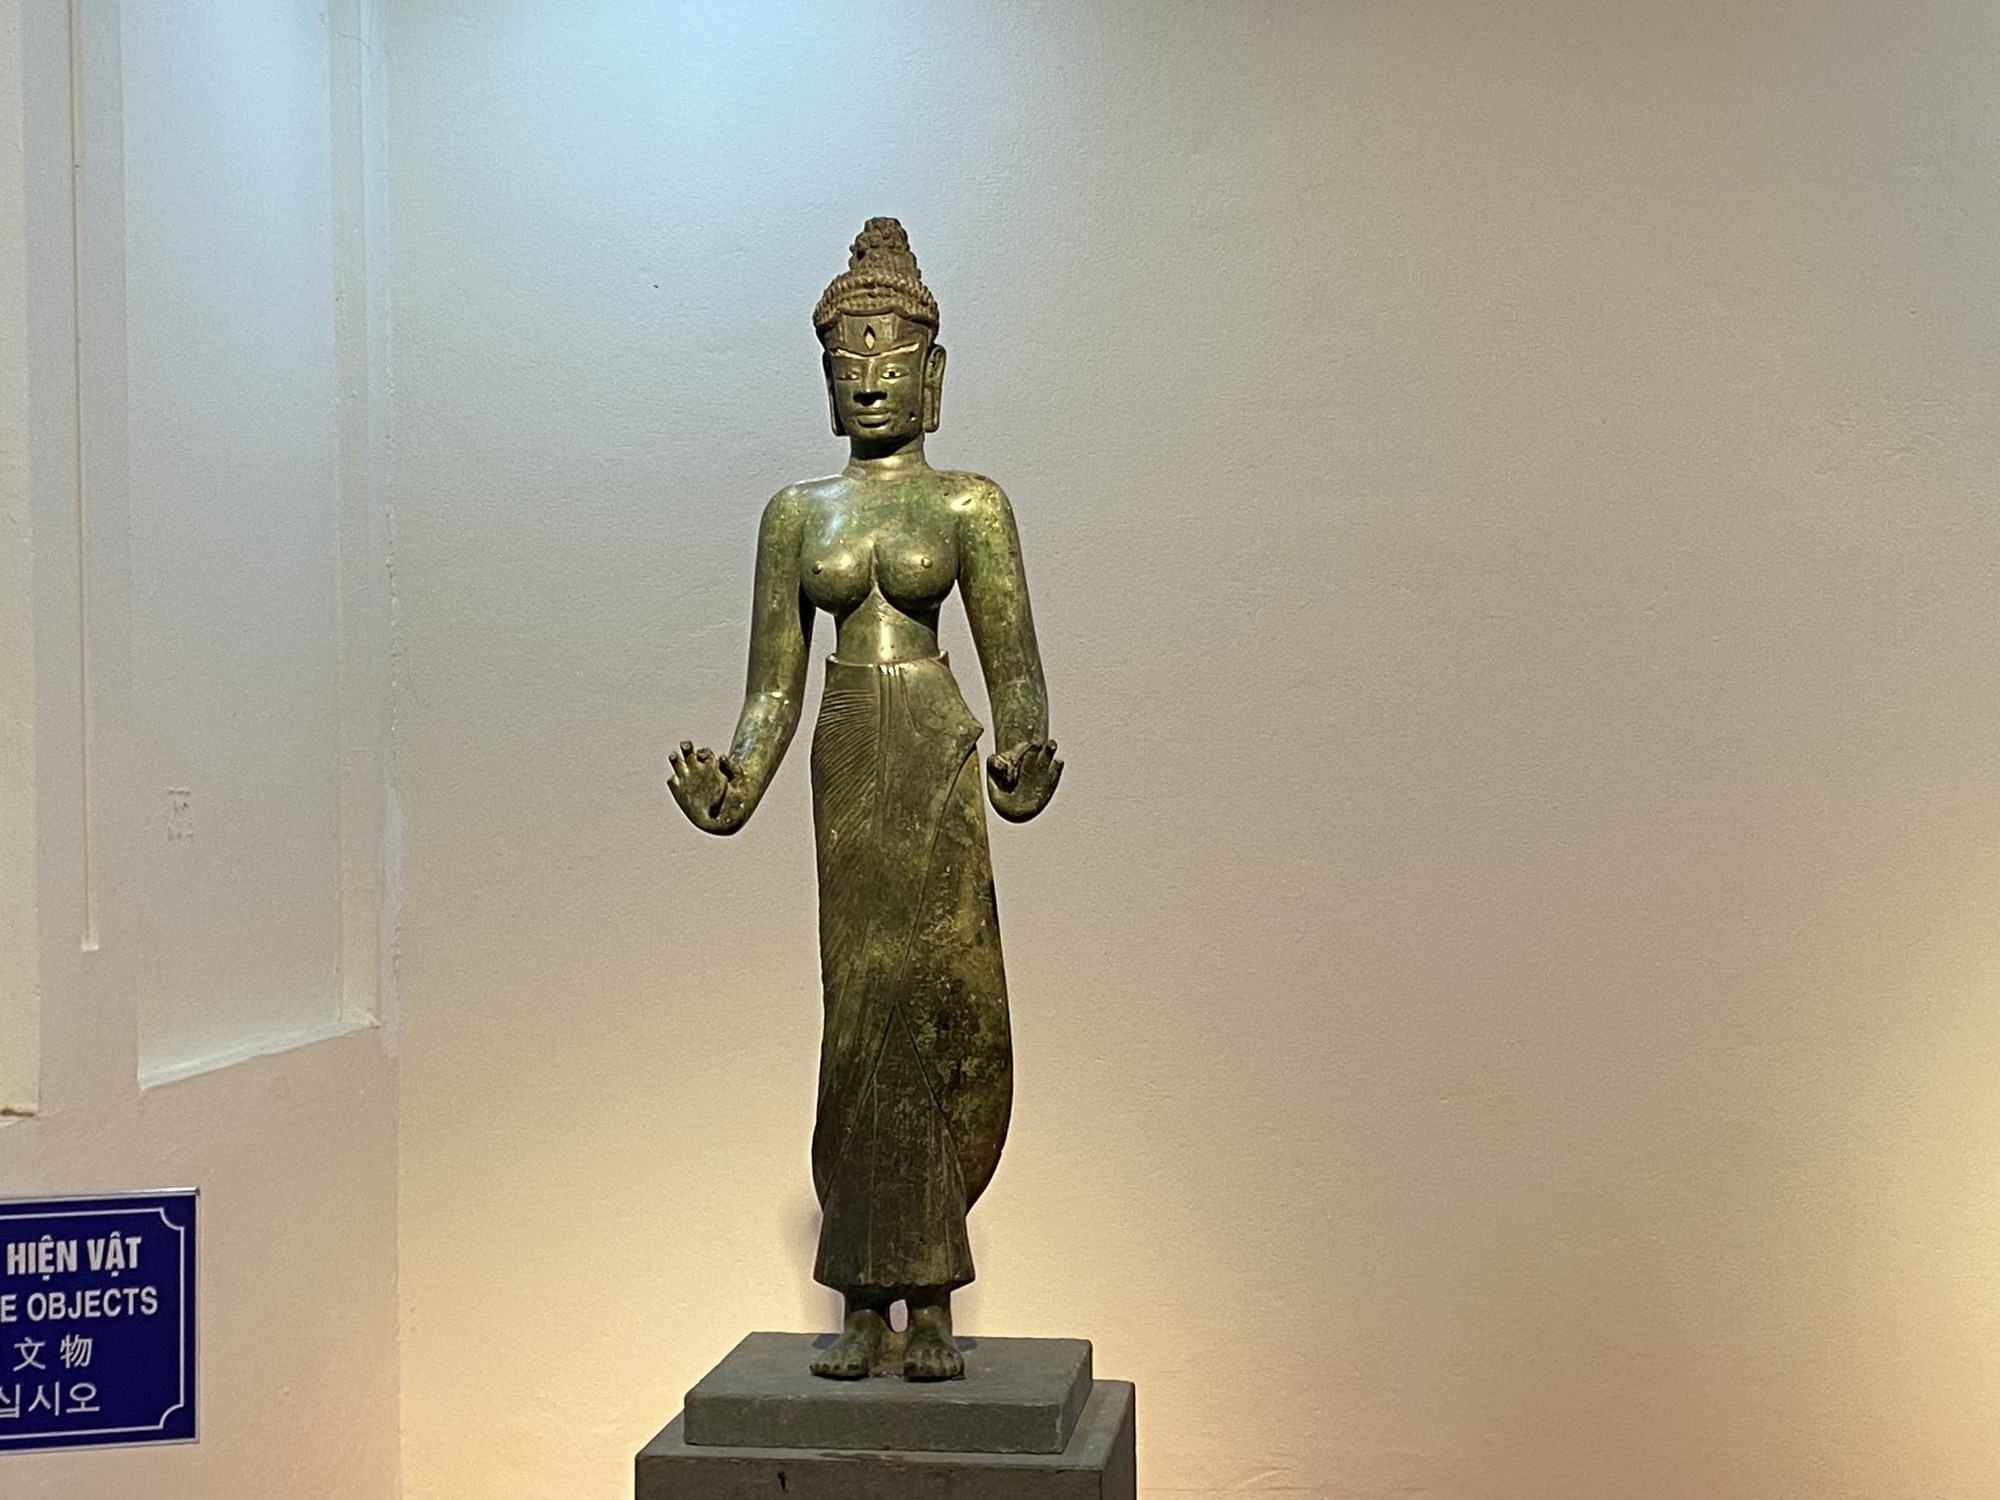 Chiêm ngưỡng 9 bảo vật quốc gia tại Bảo tàng Điêu khắc Chăm Đà Nẵng- Ảnh 5.